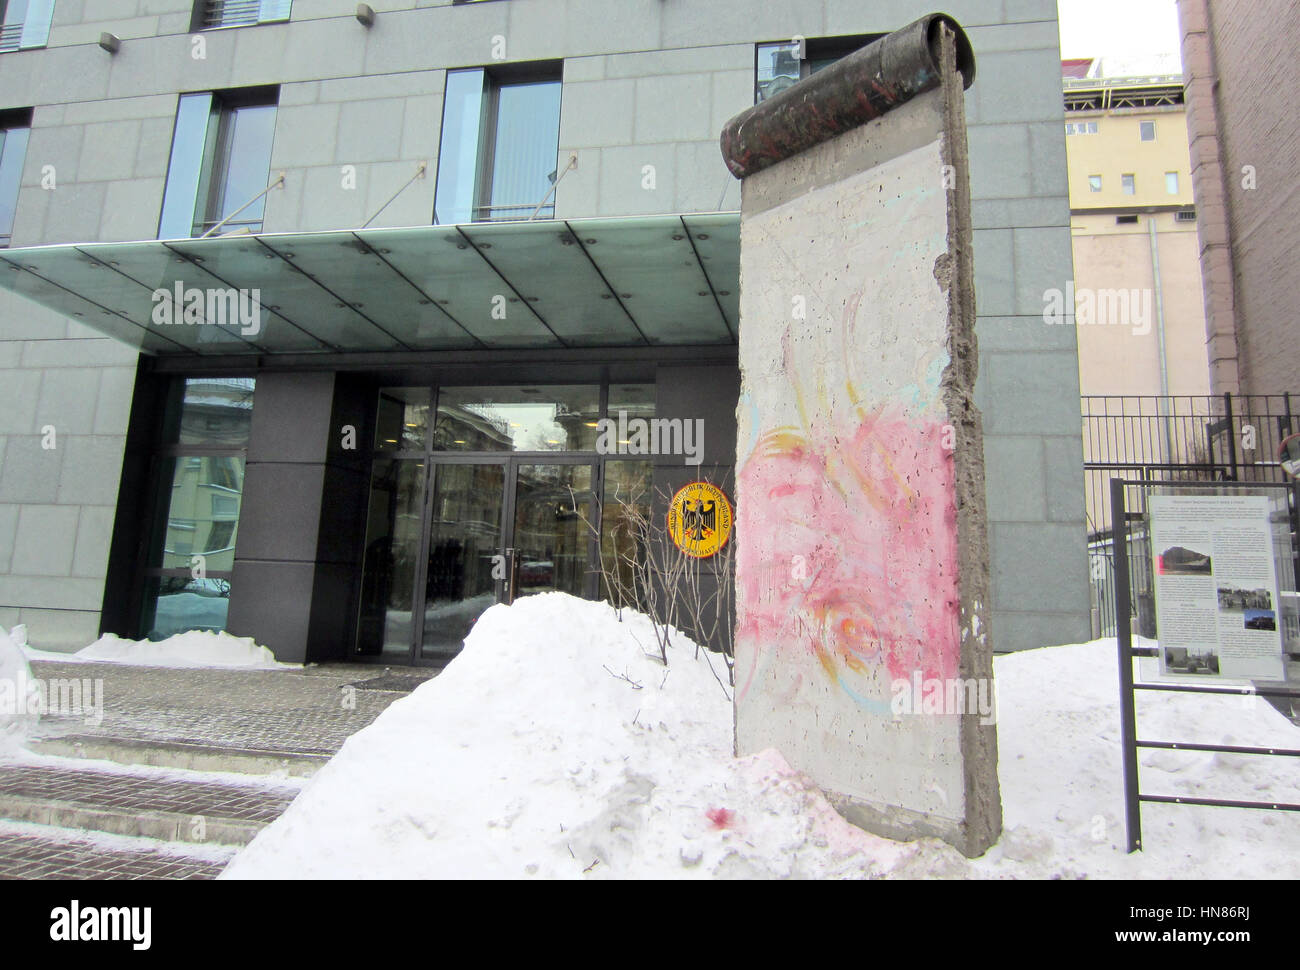 Un morceau de l'ancien mur de Berlin à l'écran en face de l'ambassade allemande à Kiev en Ukraine, le 08 février 2017. Un parlementaire ukrainien peint le mot 'Nein' ('No') sur le monument à protester contre une observation faite par l'ambassadeur d'Allemagne dans le pays concernant les élections dans la région contrôlée par separist Donbass. La pulvérisation de peinture a été supprimée. Photo : Andreas Stein/dpa Banque D'Images